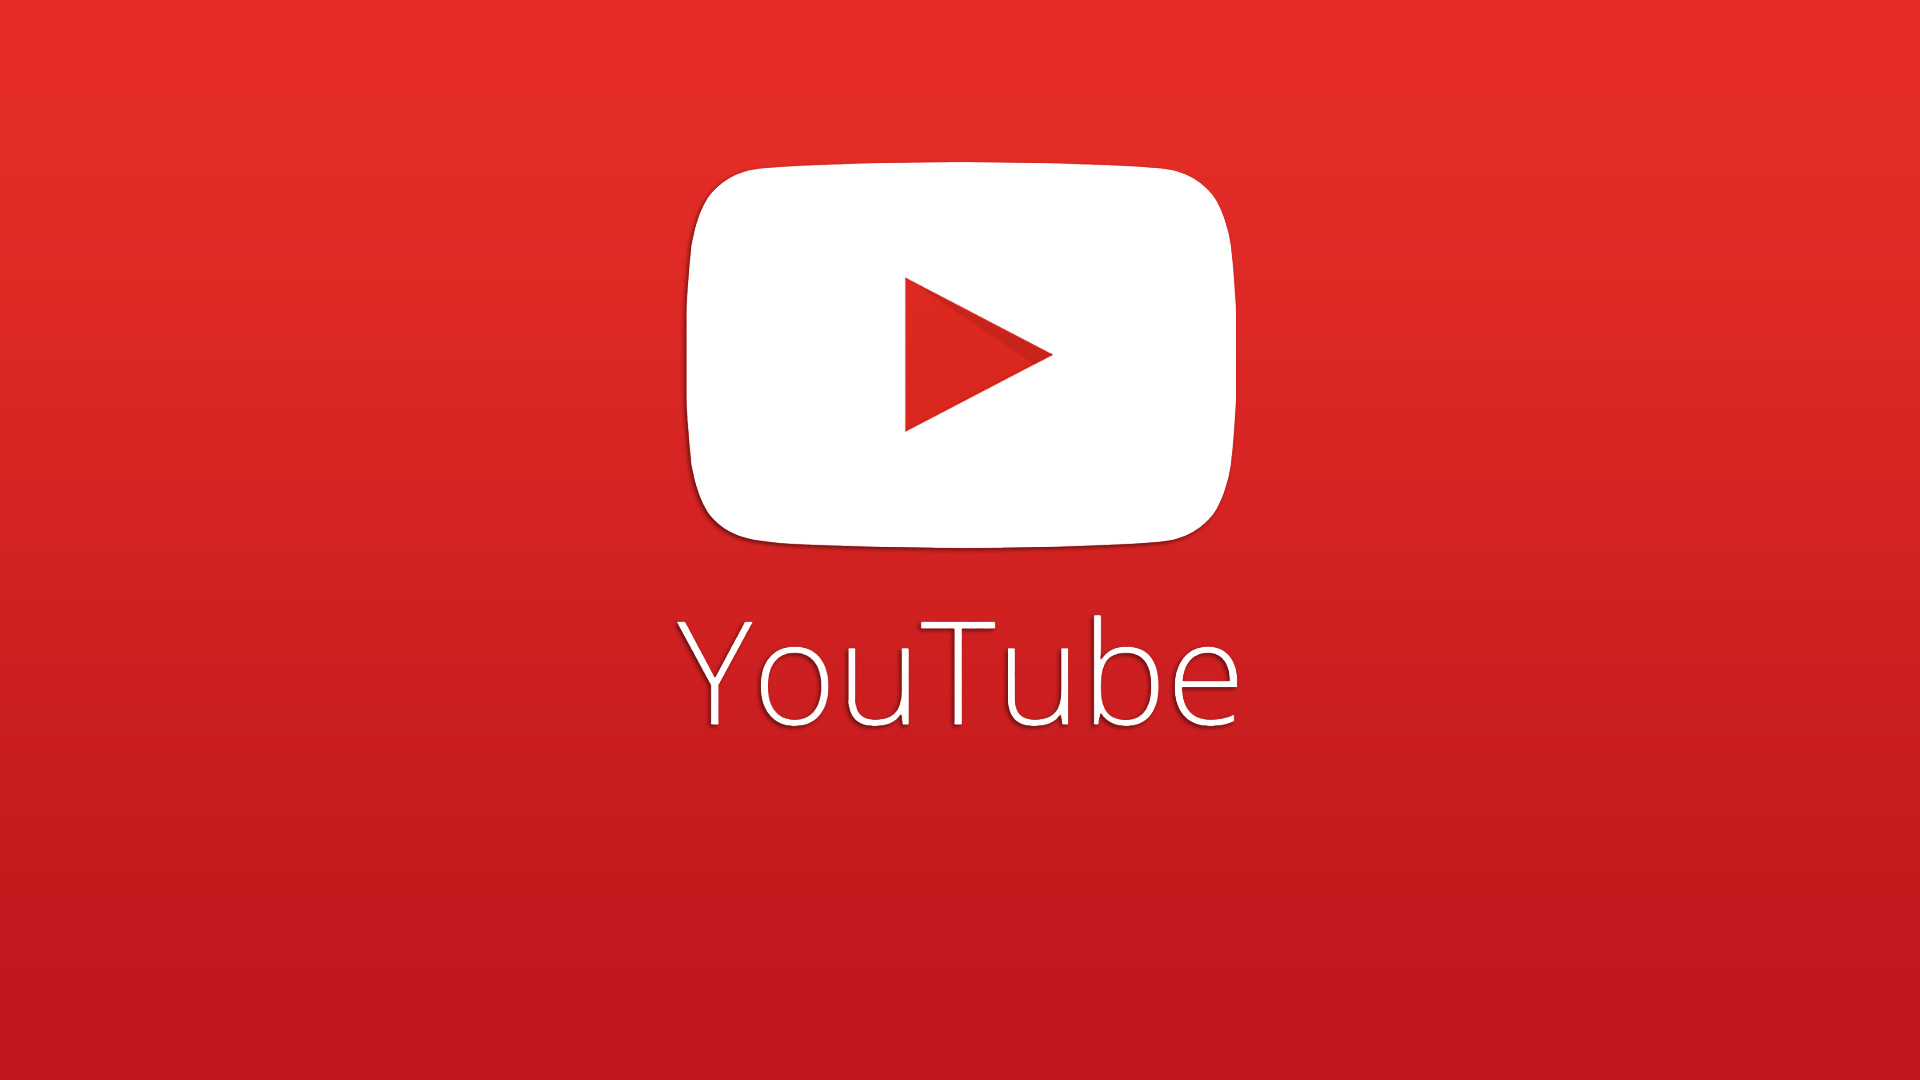 Пользователи YouTube смогут вести трансляции и зарабатывать на них